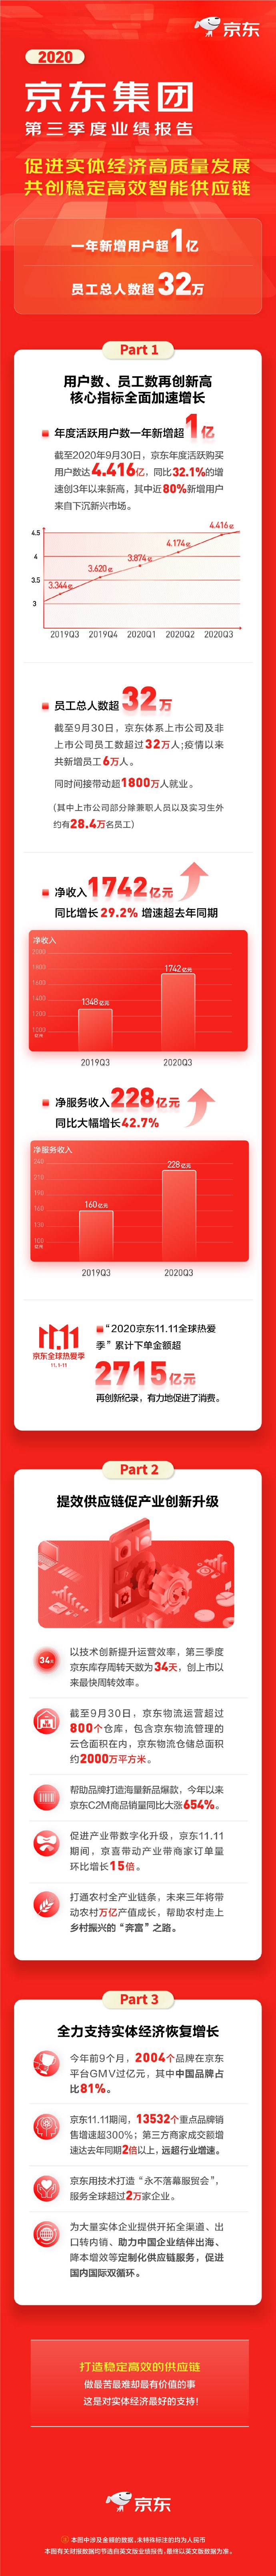 2020年11月16日，京东发布 2020 年 Q3 财报，净利润 56 亿元同比增长 80.1%